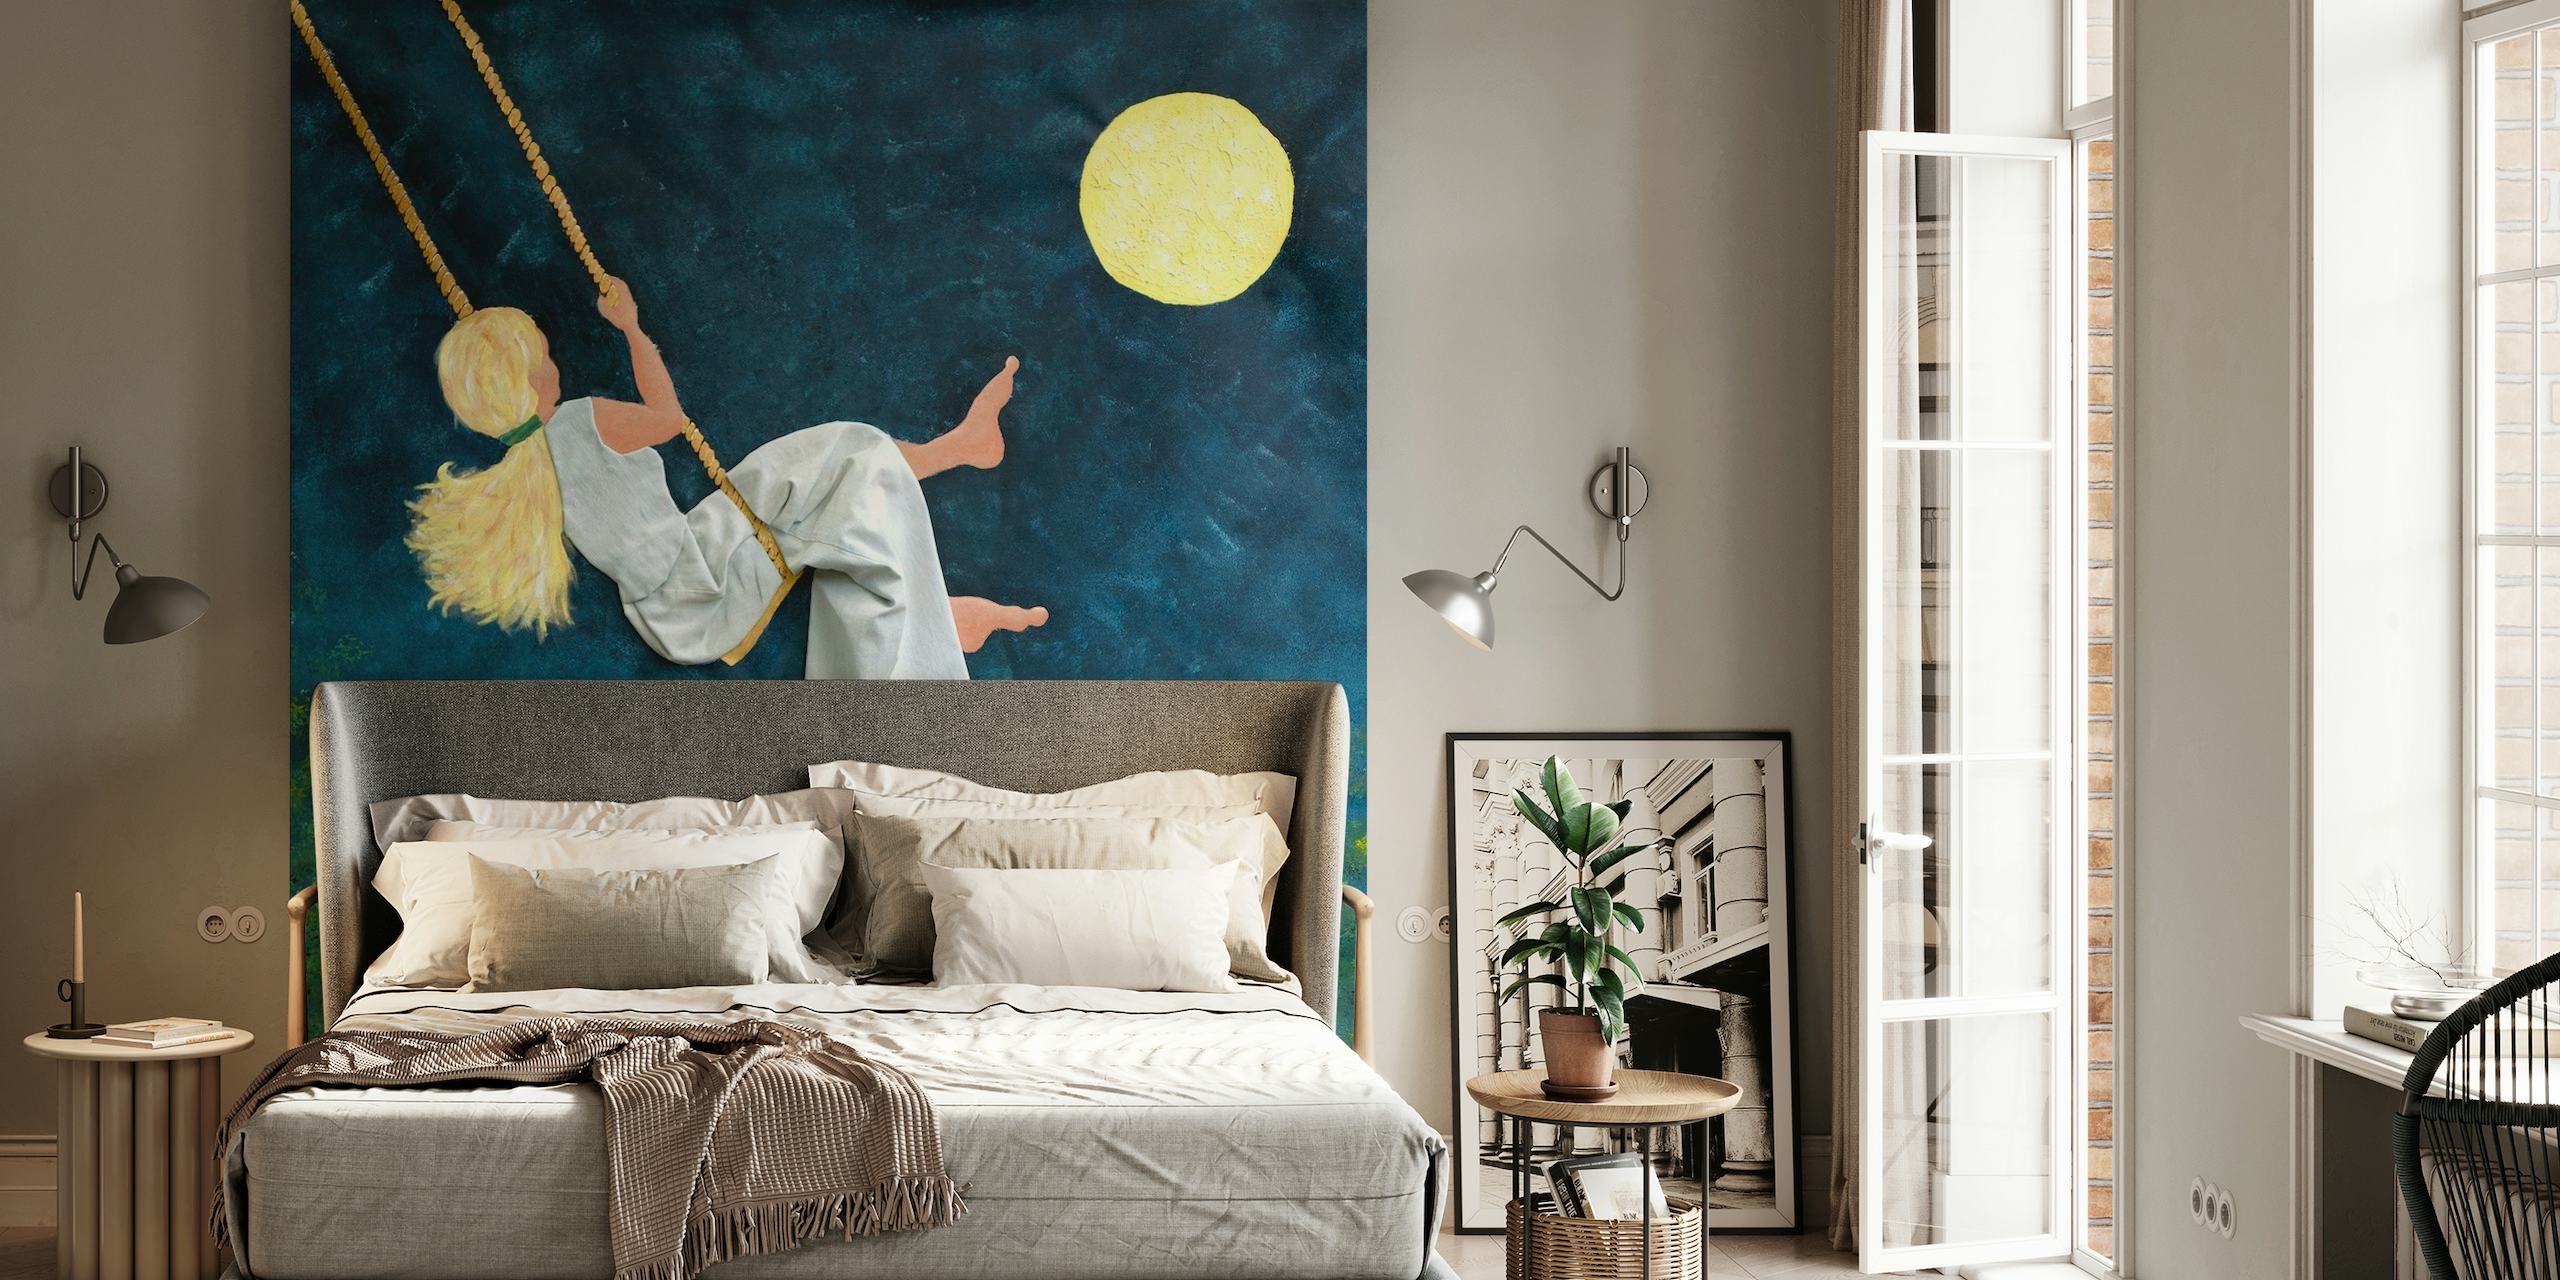 Dívka houpající se směrem k měsíci na nástěnné malbě hvězdné noci